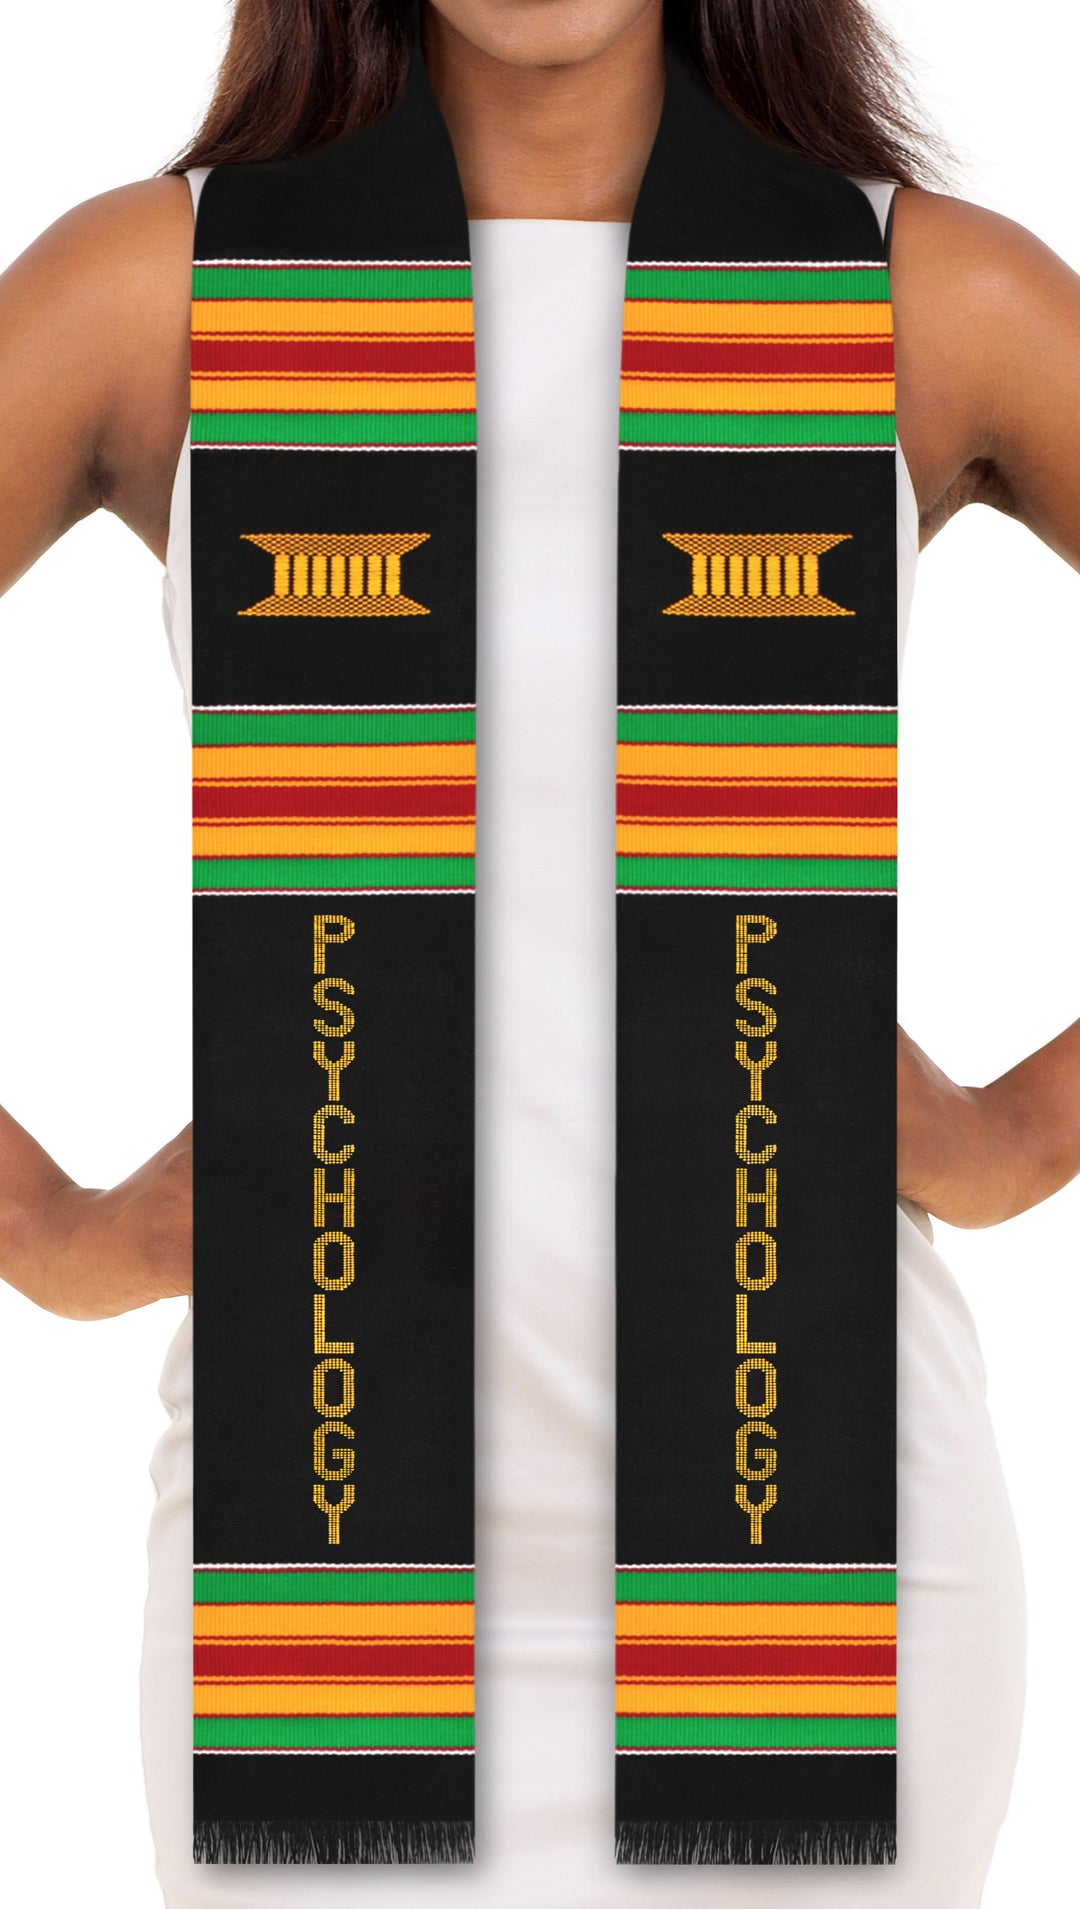 Psychology Major Authentic Handwoven Kente Cloth Graduation Stole